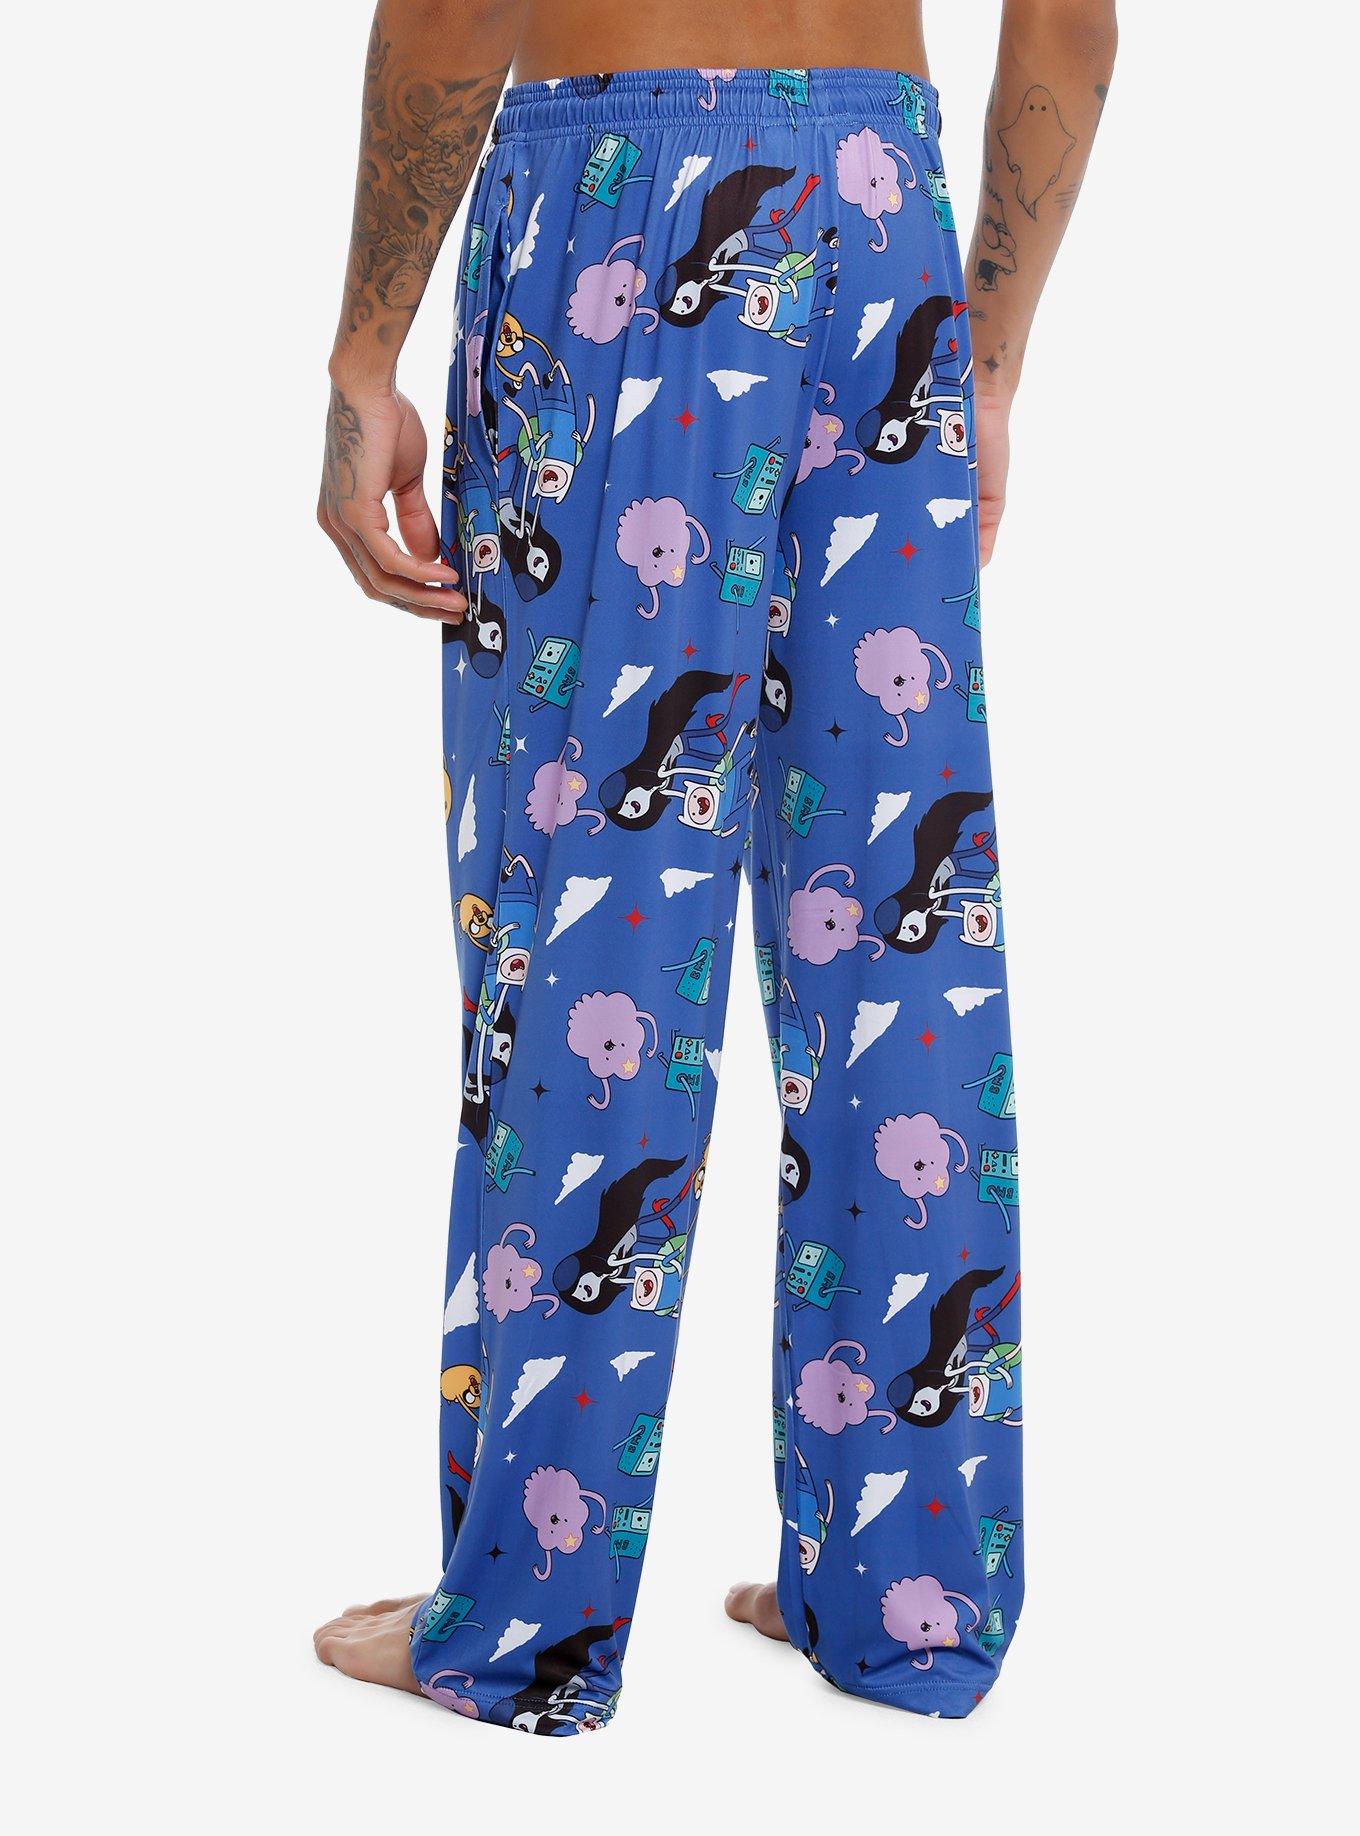 Adventure Time Pajama Pants Plus